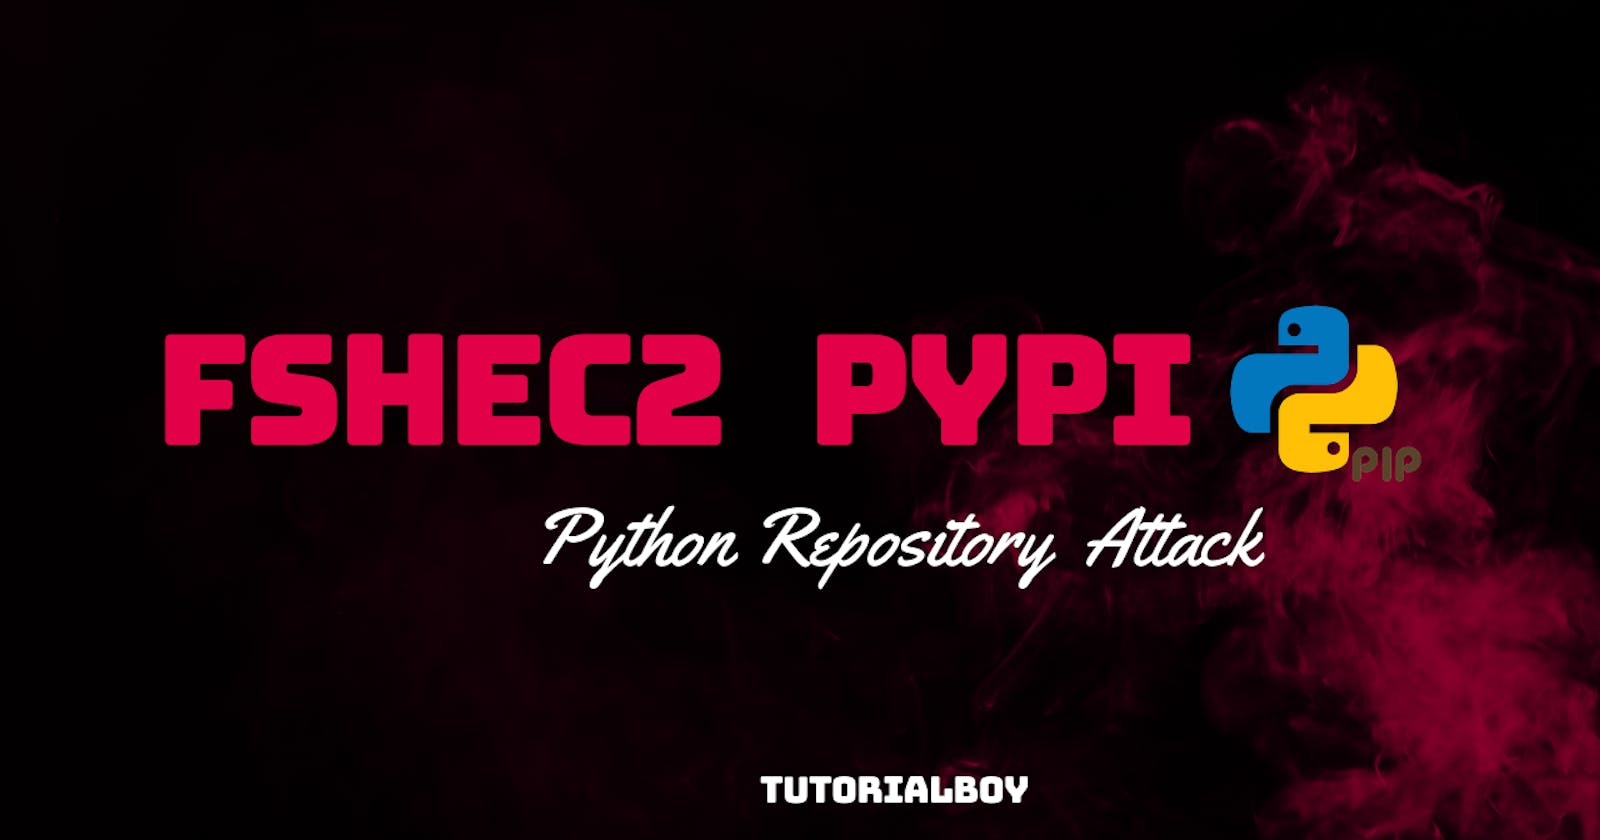 A Malicious Python Repository fshec2 PyPI Attack Analysis